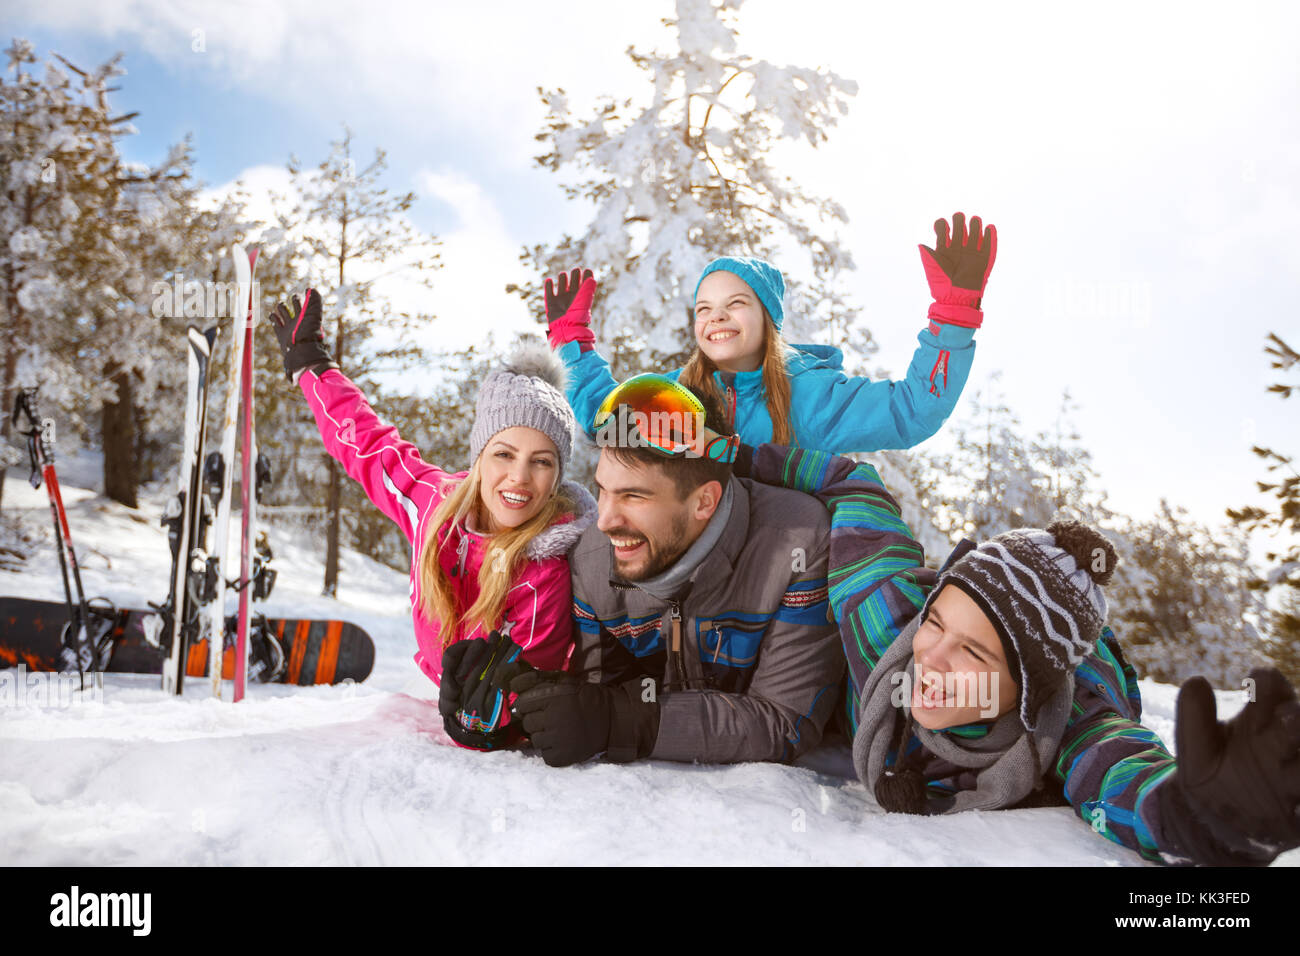 Glückliche junge Familie zusammen auf Schnee im Winter Urlaub Stockfoto